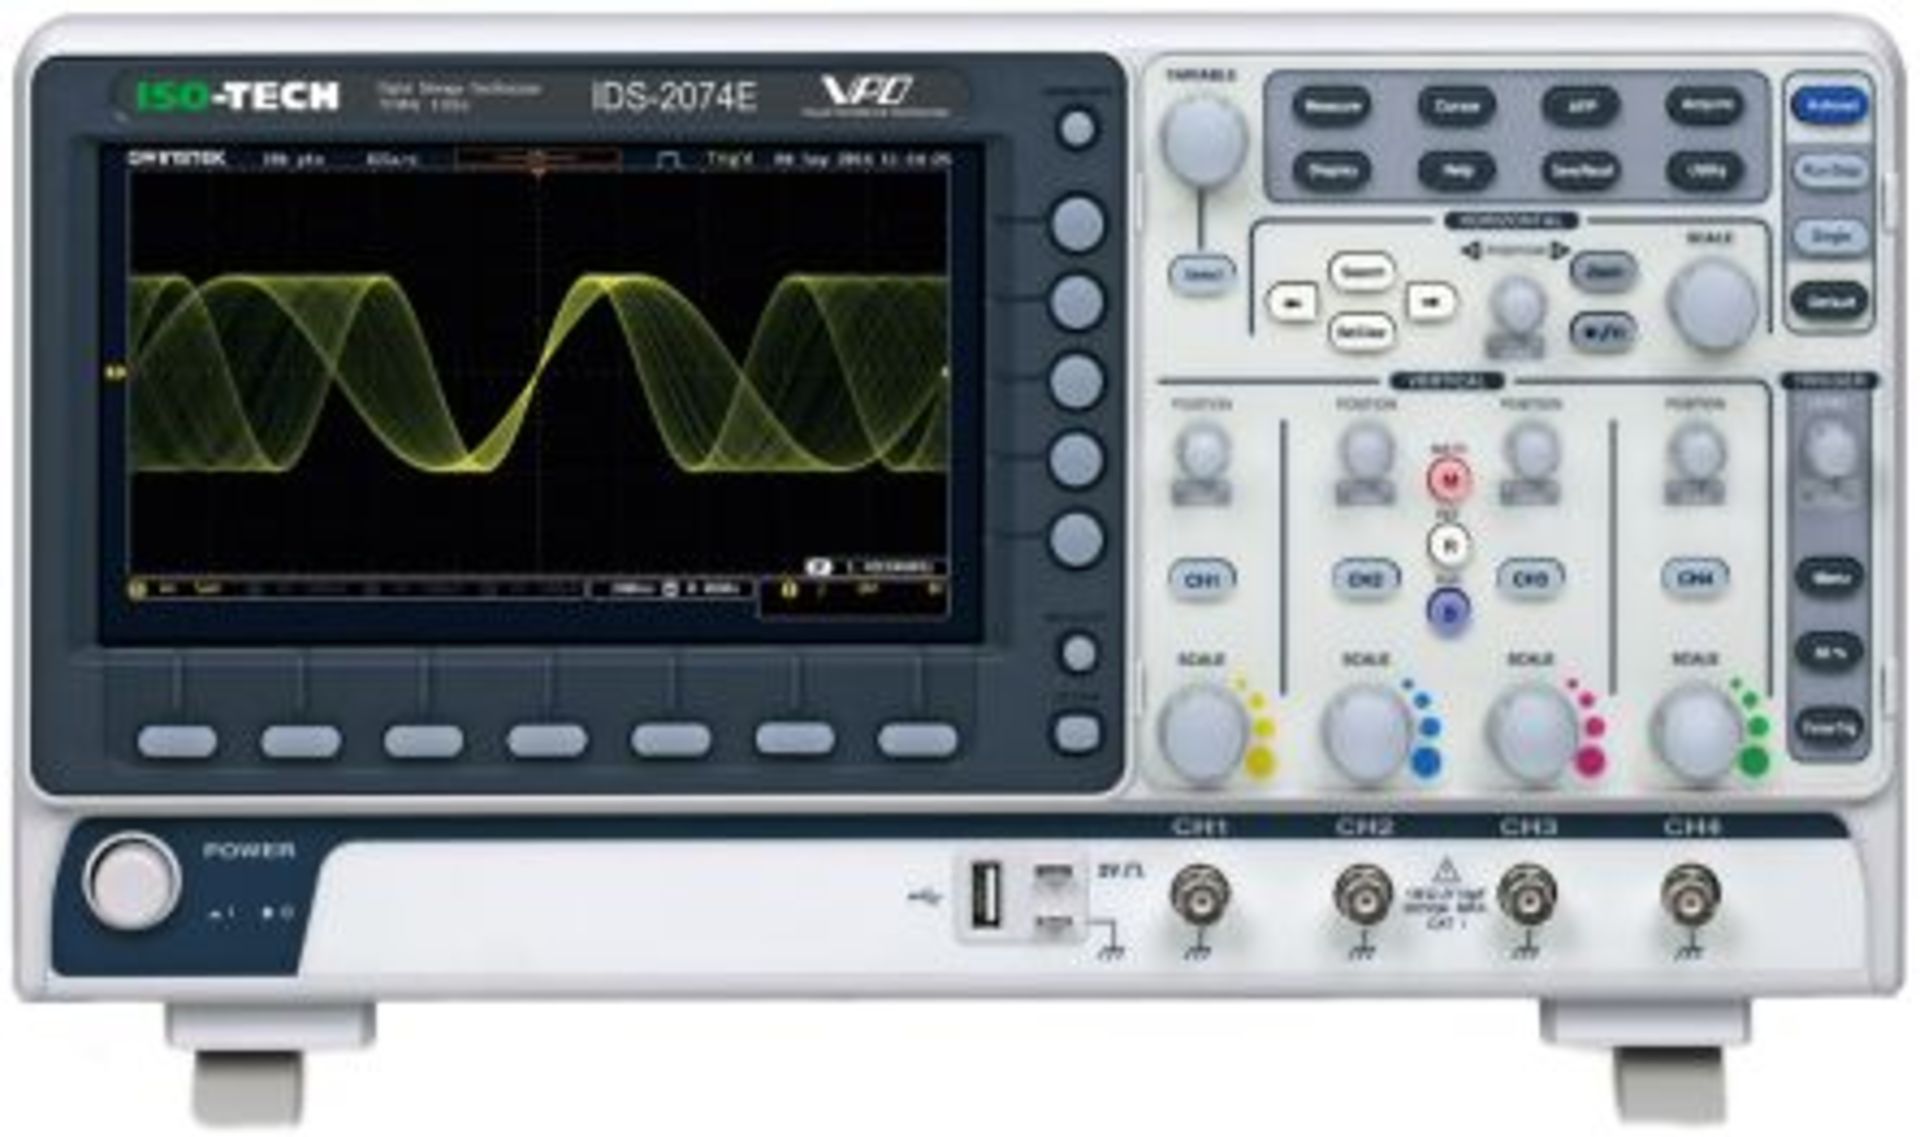 IDS-2000 Series IDS-2074E Digital Oscilloscope, Digital Storage, 4 Channels, 70MHz